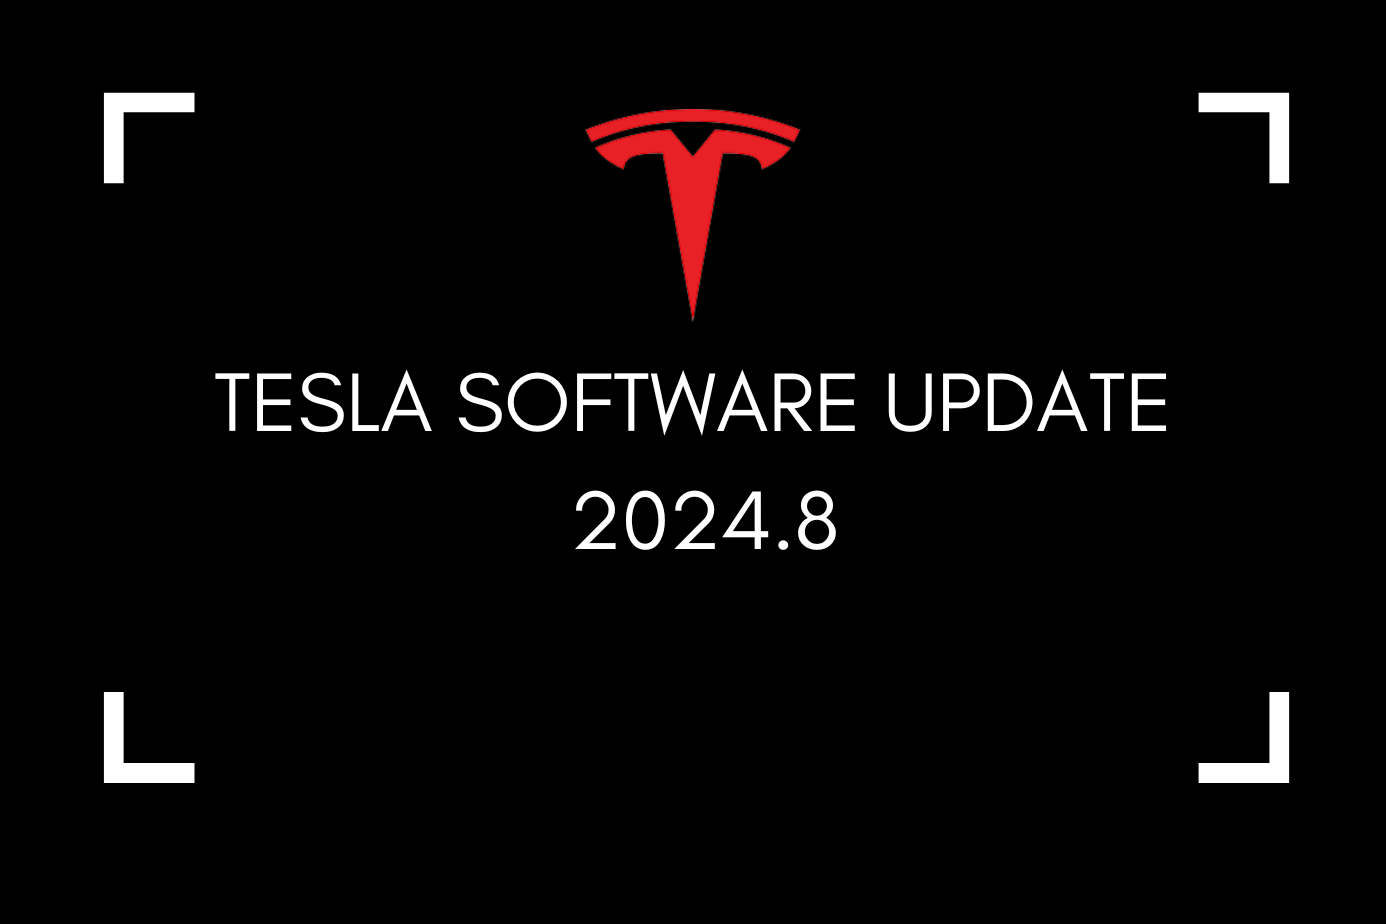 Tesla Software Update 2024.8 Matrix LED